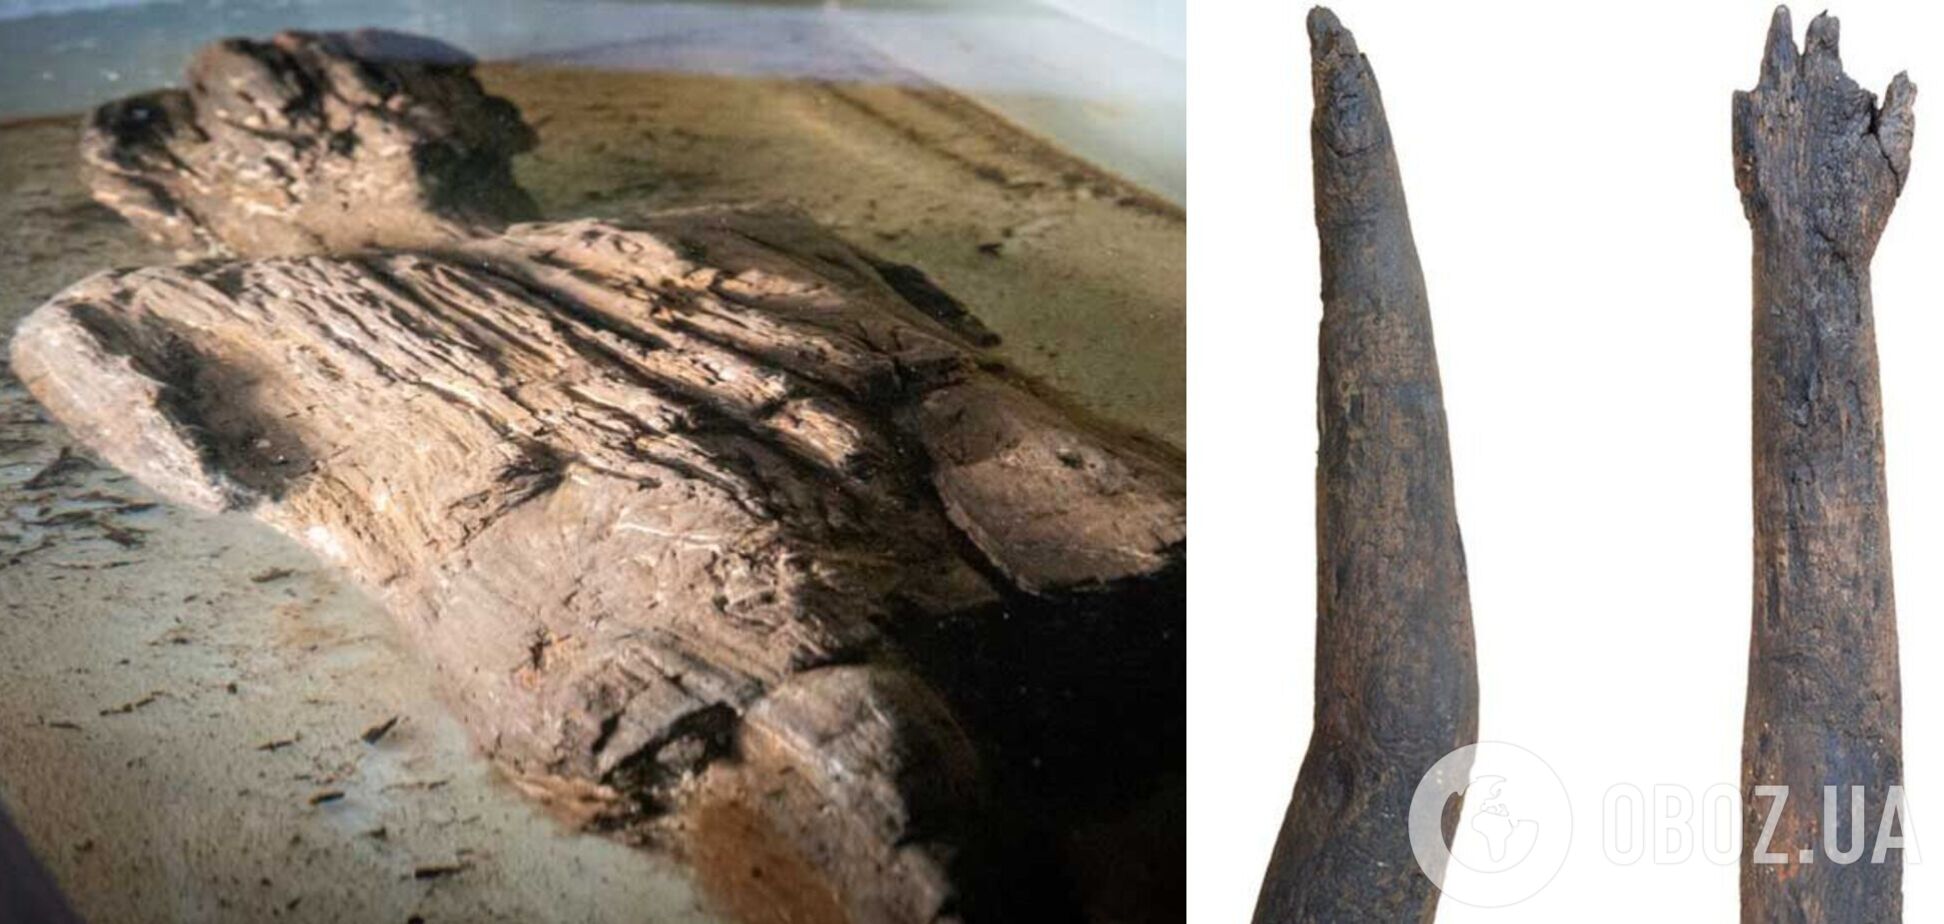 У Британії під час розкопок виявили давньоримську фігурку з дерева, що збереглася дивом. Фото